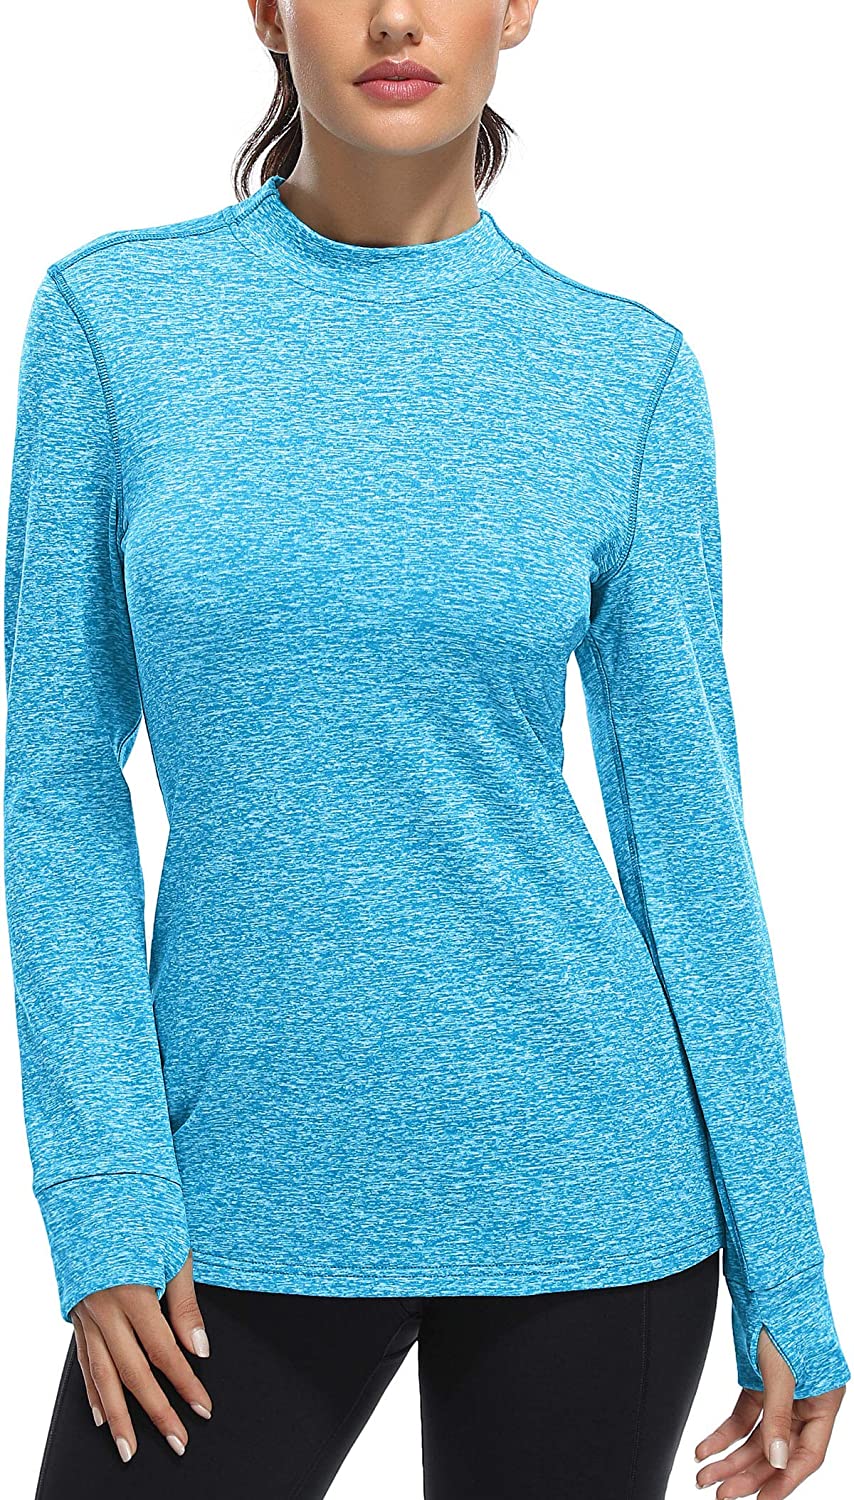 Fulbelle Women's Fleece Thermal Tops Long Sleeve Mock Neck Running Shirts with Thumbhole 